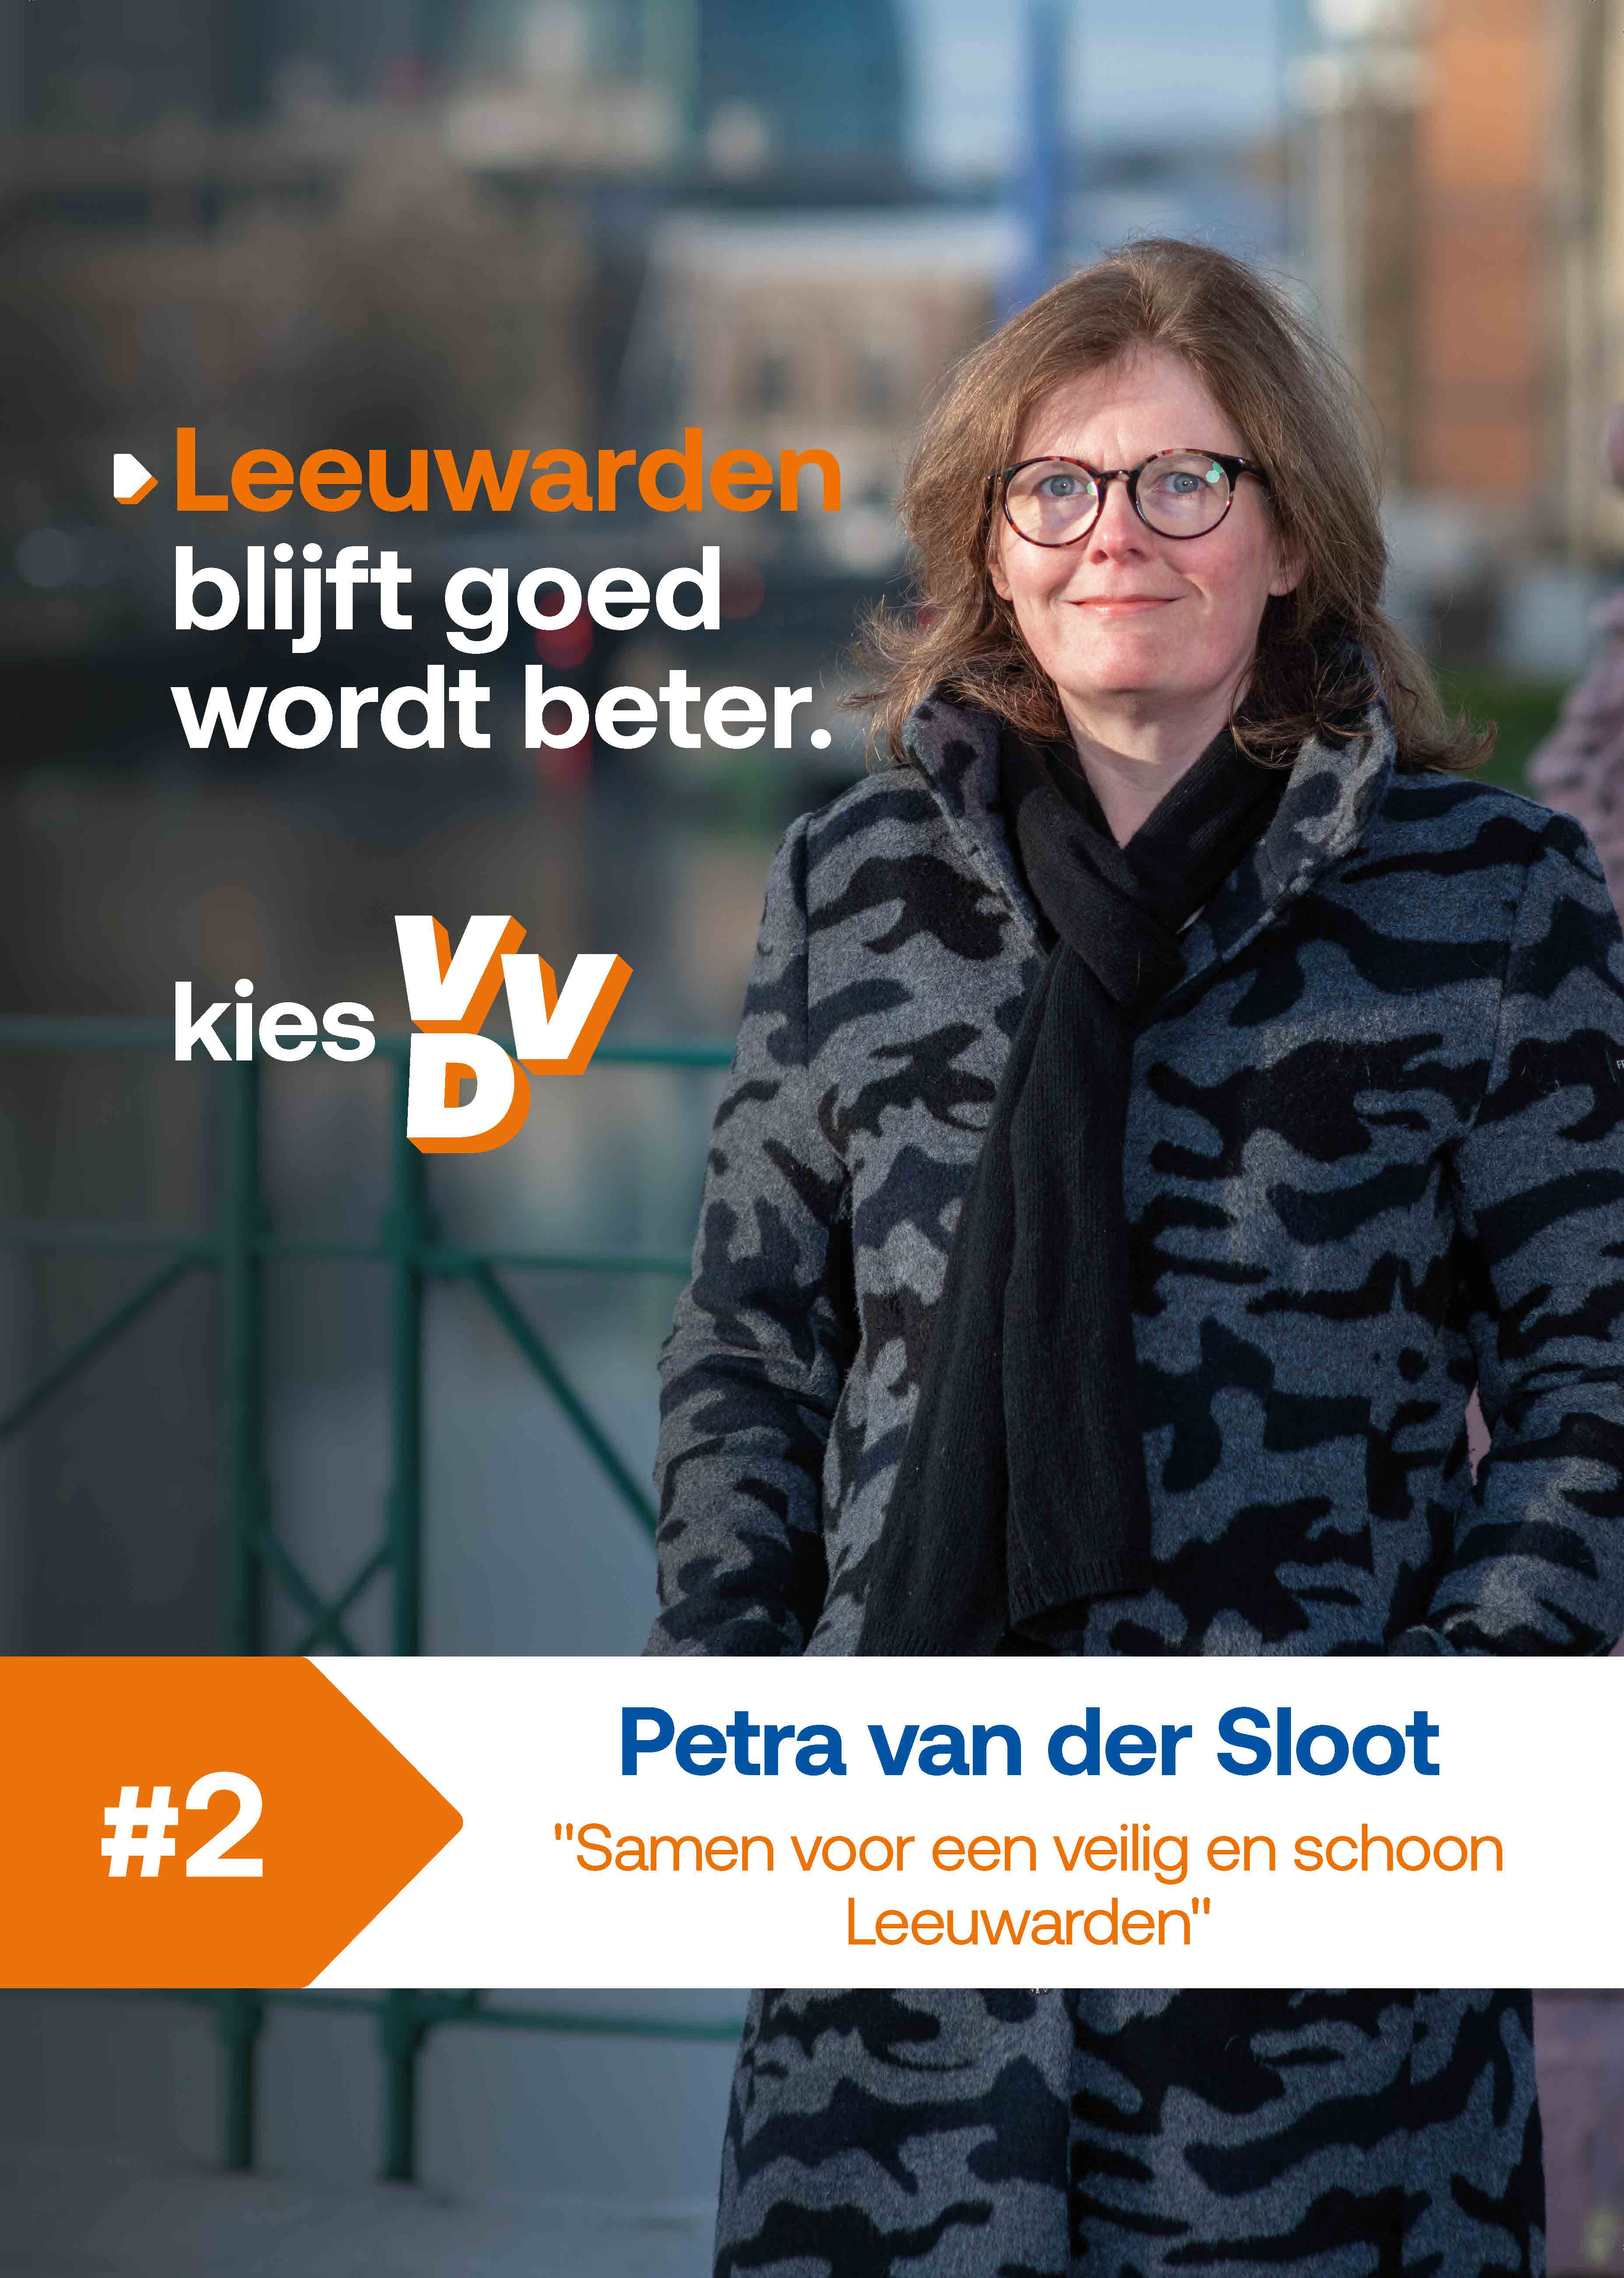 Petra van der Sloot